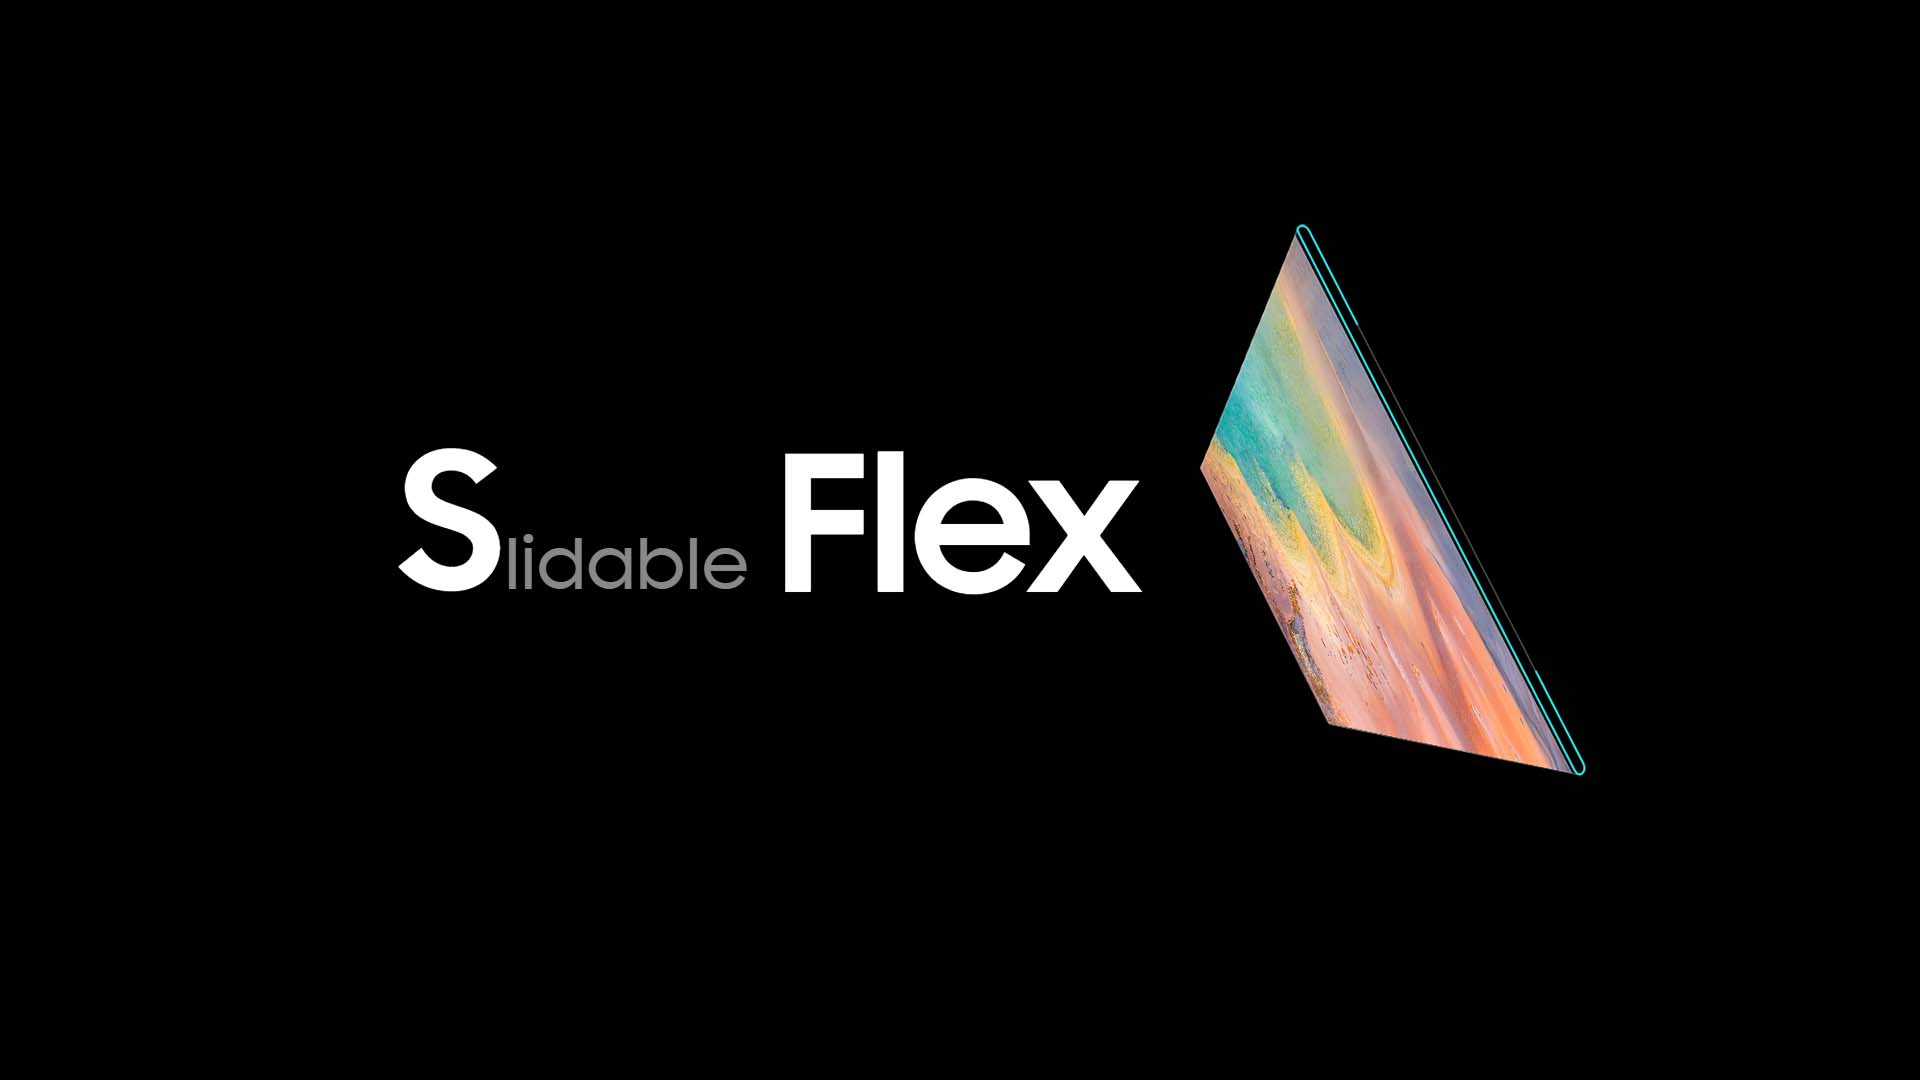 Samsung Slidable Flex OLED Display